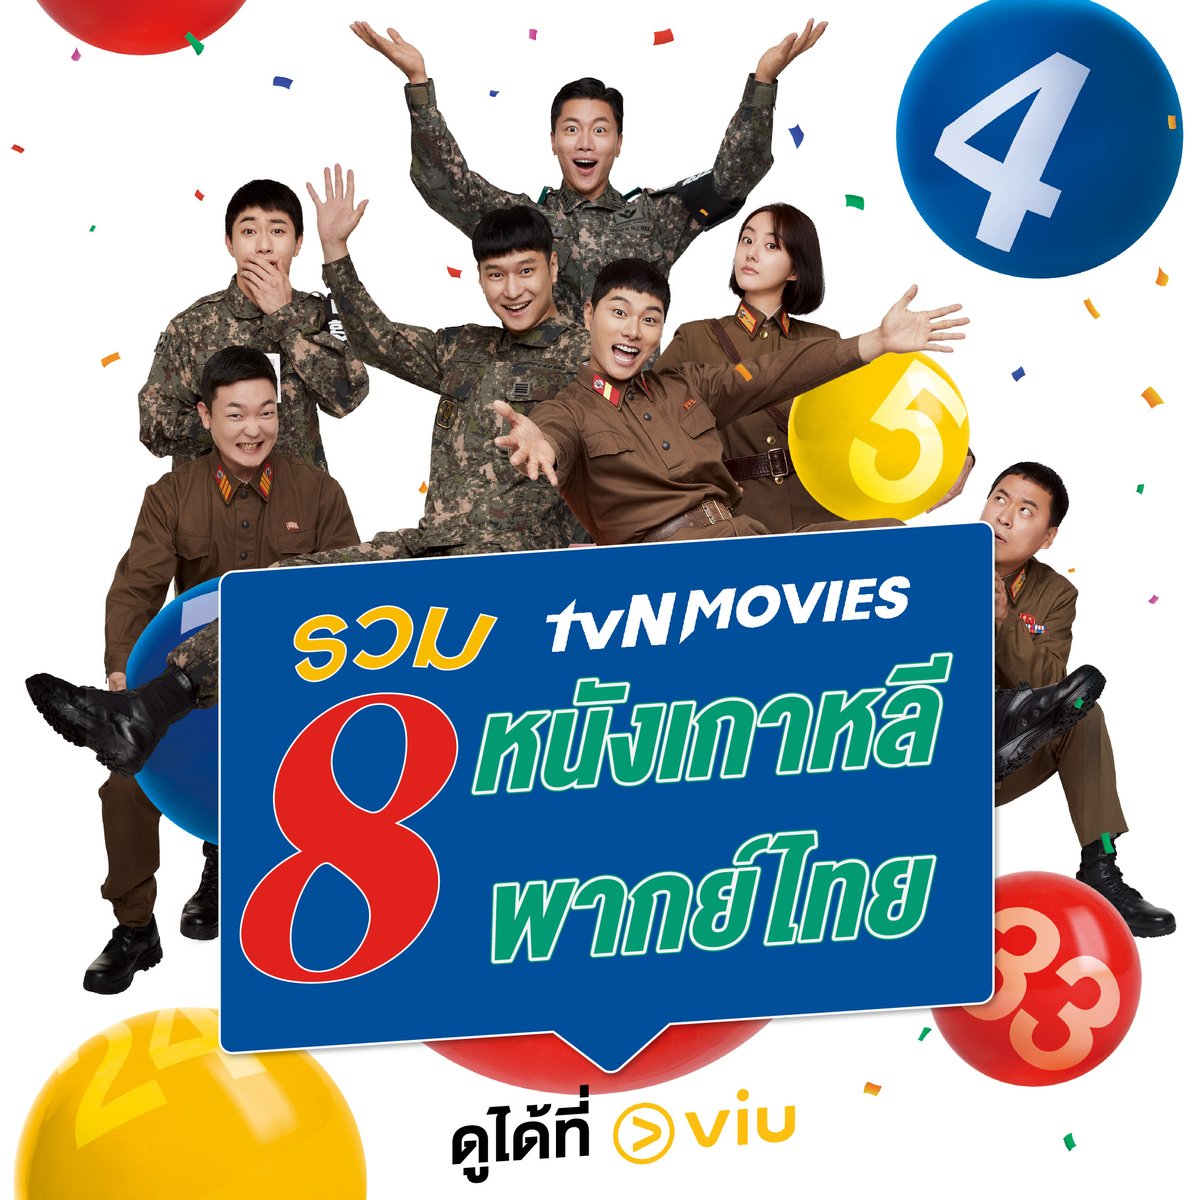 💖 รวม 8 'หนังเกาหลี พากย์ไทย' ใน Viu! 💖

เด็ดทุกเรื่อง รับประกันความสนุกจาก #tvNMovie 😘

#Viuอ่านว่าวิว #ดูได้ที่Viu #หนังเกาหลี #พากย์ไทย